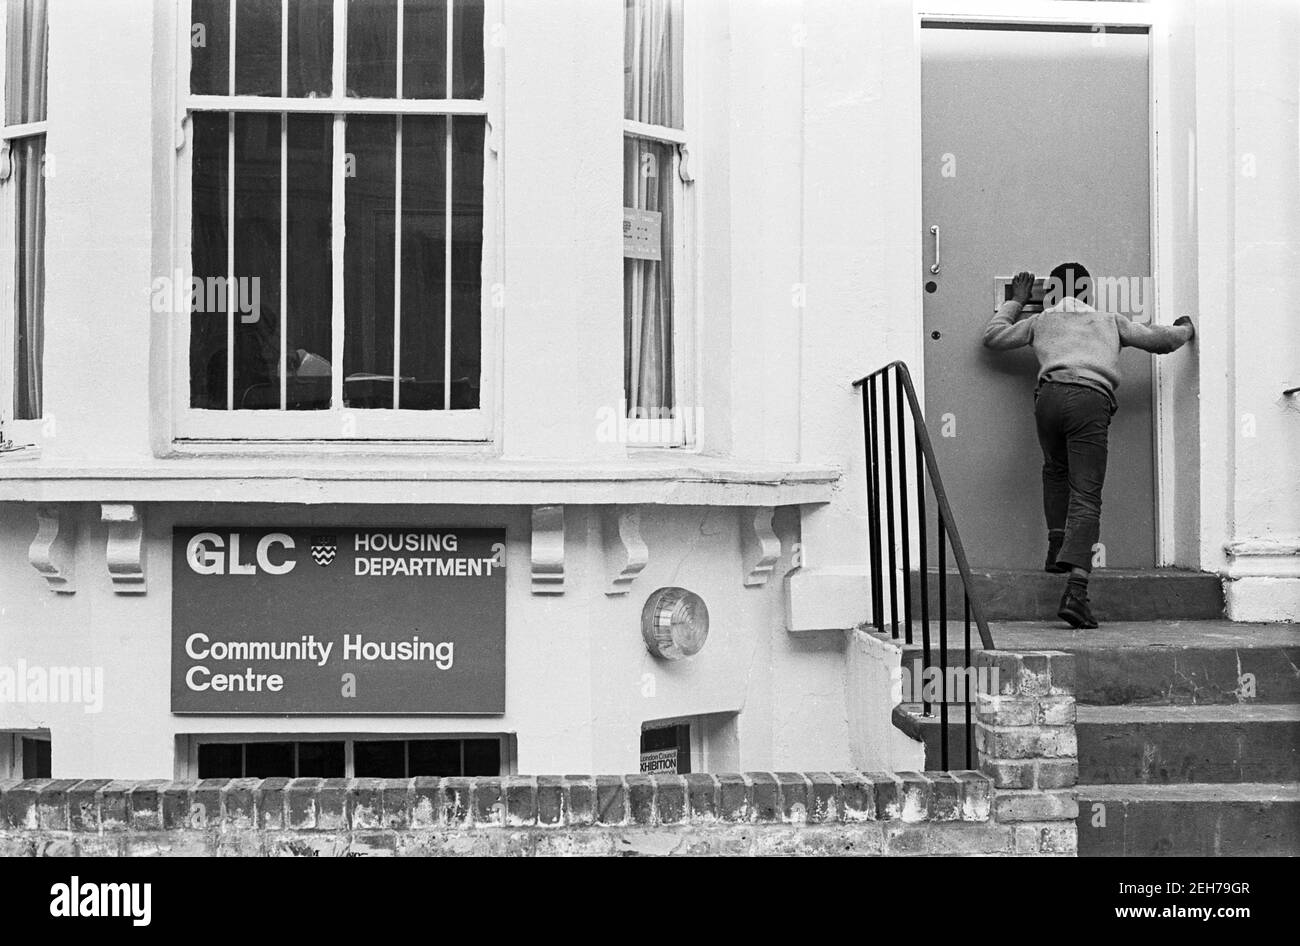 Royaume-Uni, West London, Notting Hill, 1973. Les grandes maisons de quatre étages en ruine et en ruine commencent à être restaurées et redécorées. Greater London Council Housing Department - Community Housing Centre pour les populations locales. Banque D'Images